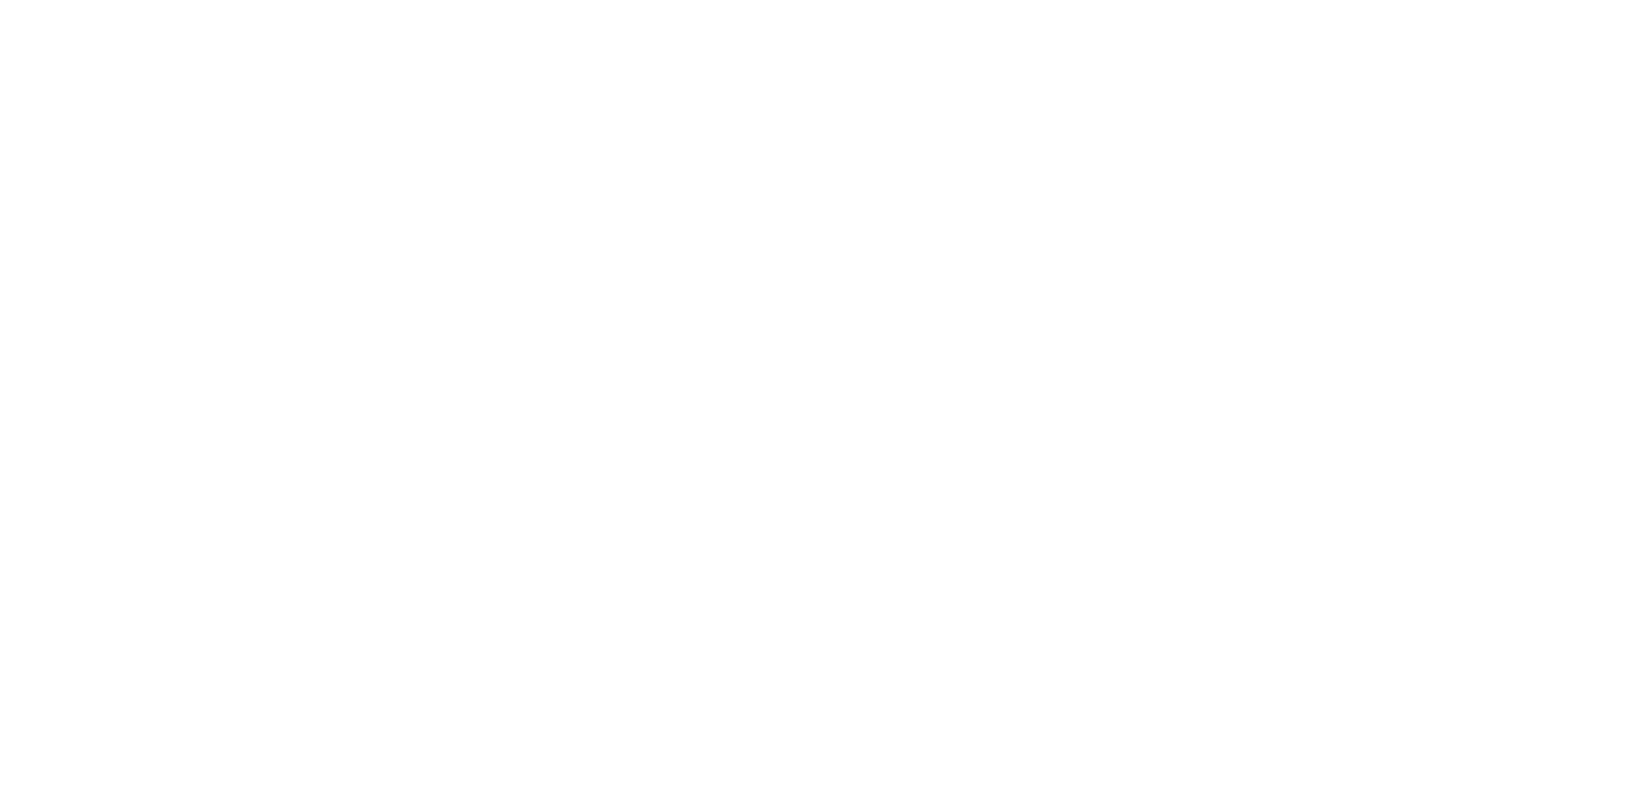 Norma Group logo grand pour les fonds sombres (PNG transparent)